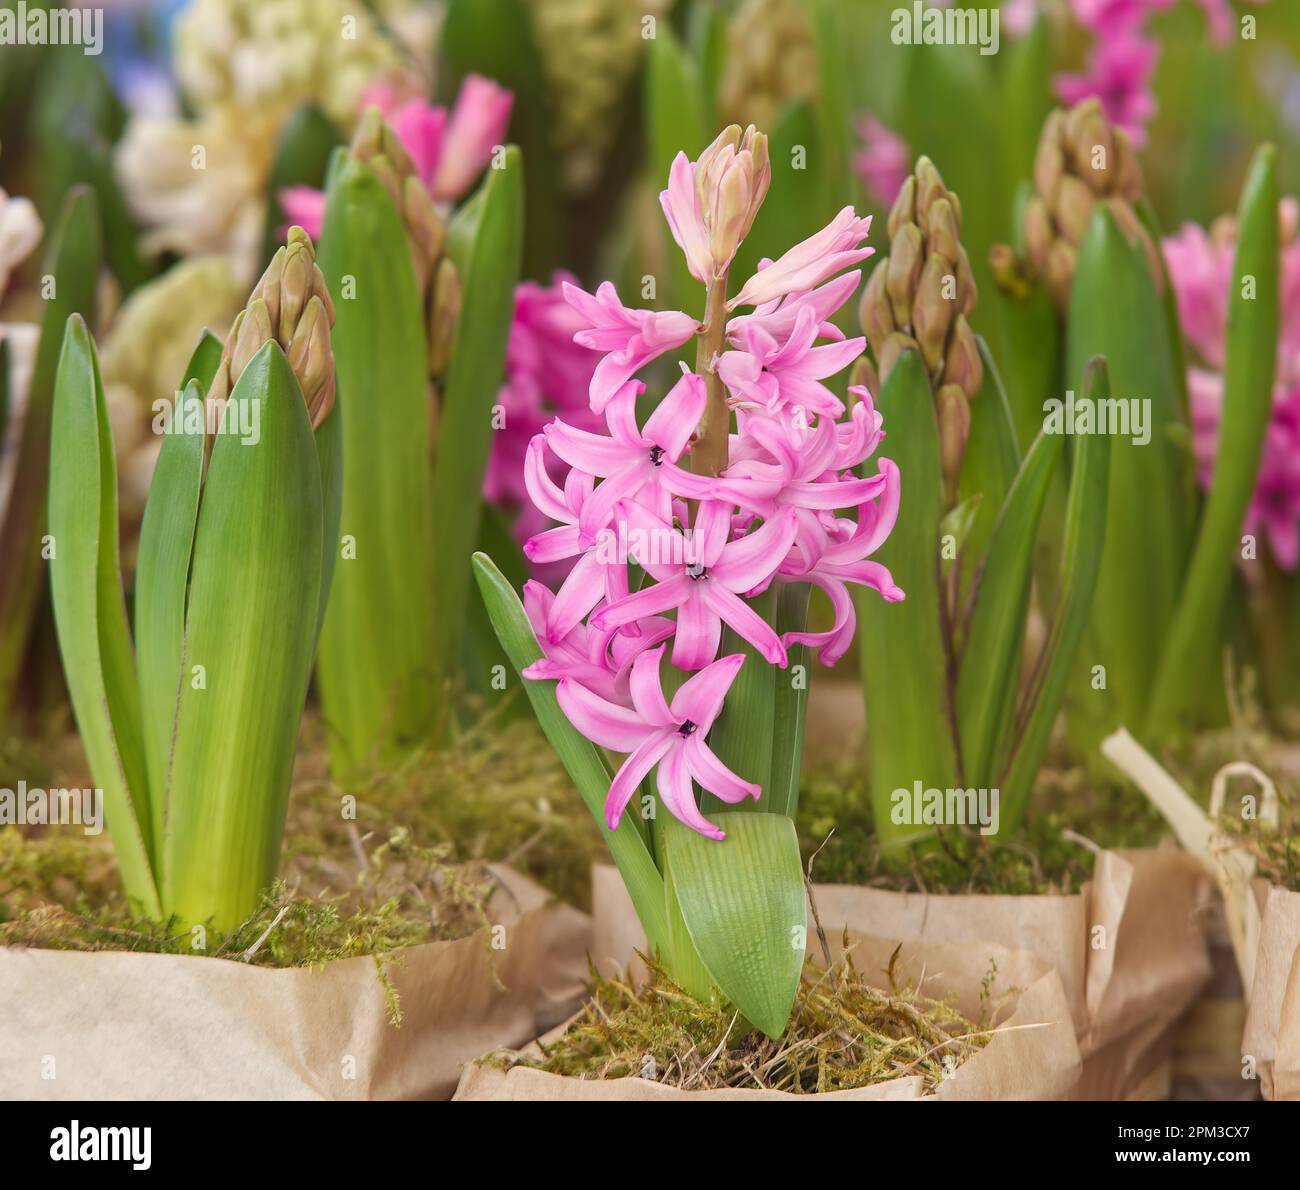 Piante di giacinto, piante di fiore di hyacinthus orientalis esposto in stand fiorista al mercato di strada degli agricoltori, nessuna gente, nessuna intelligenza artificiale. Foto Stock